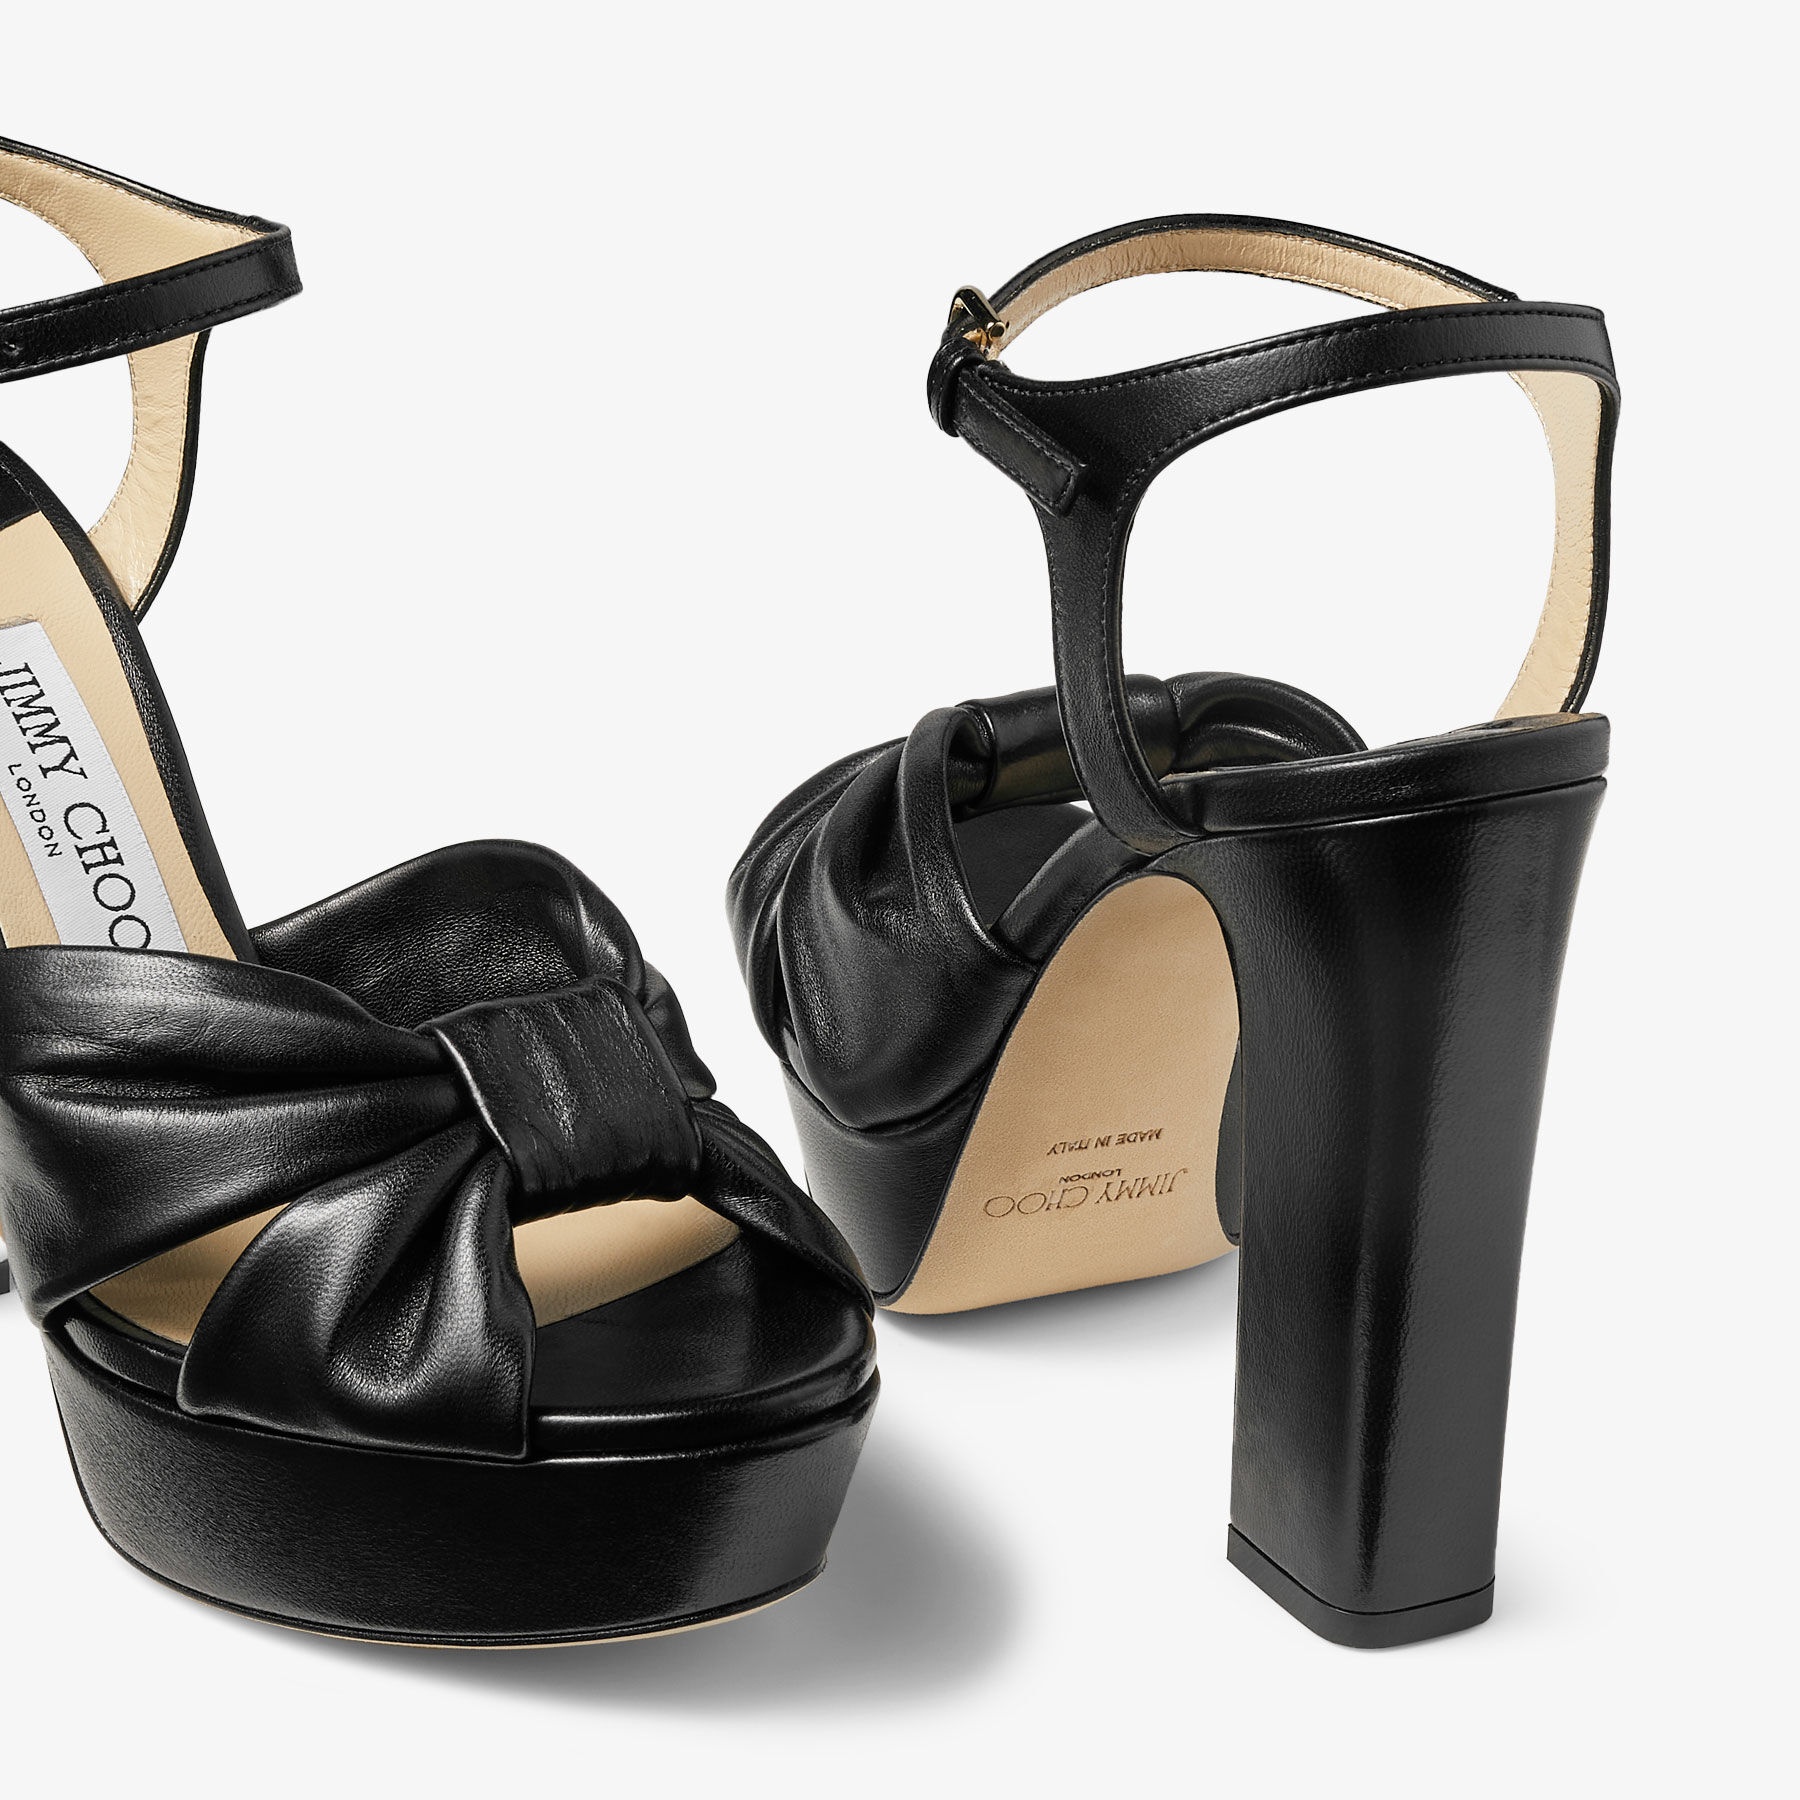 Heloise 120
Black Nappa Leather Platform Sandals - 3